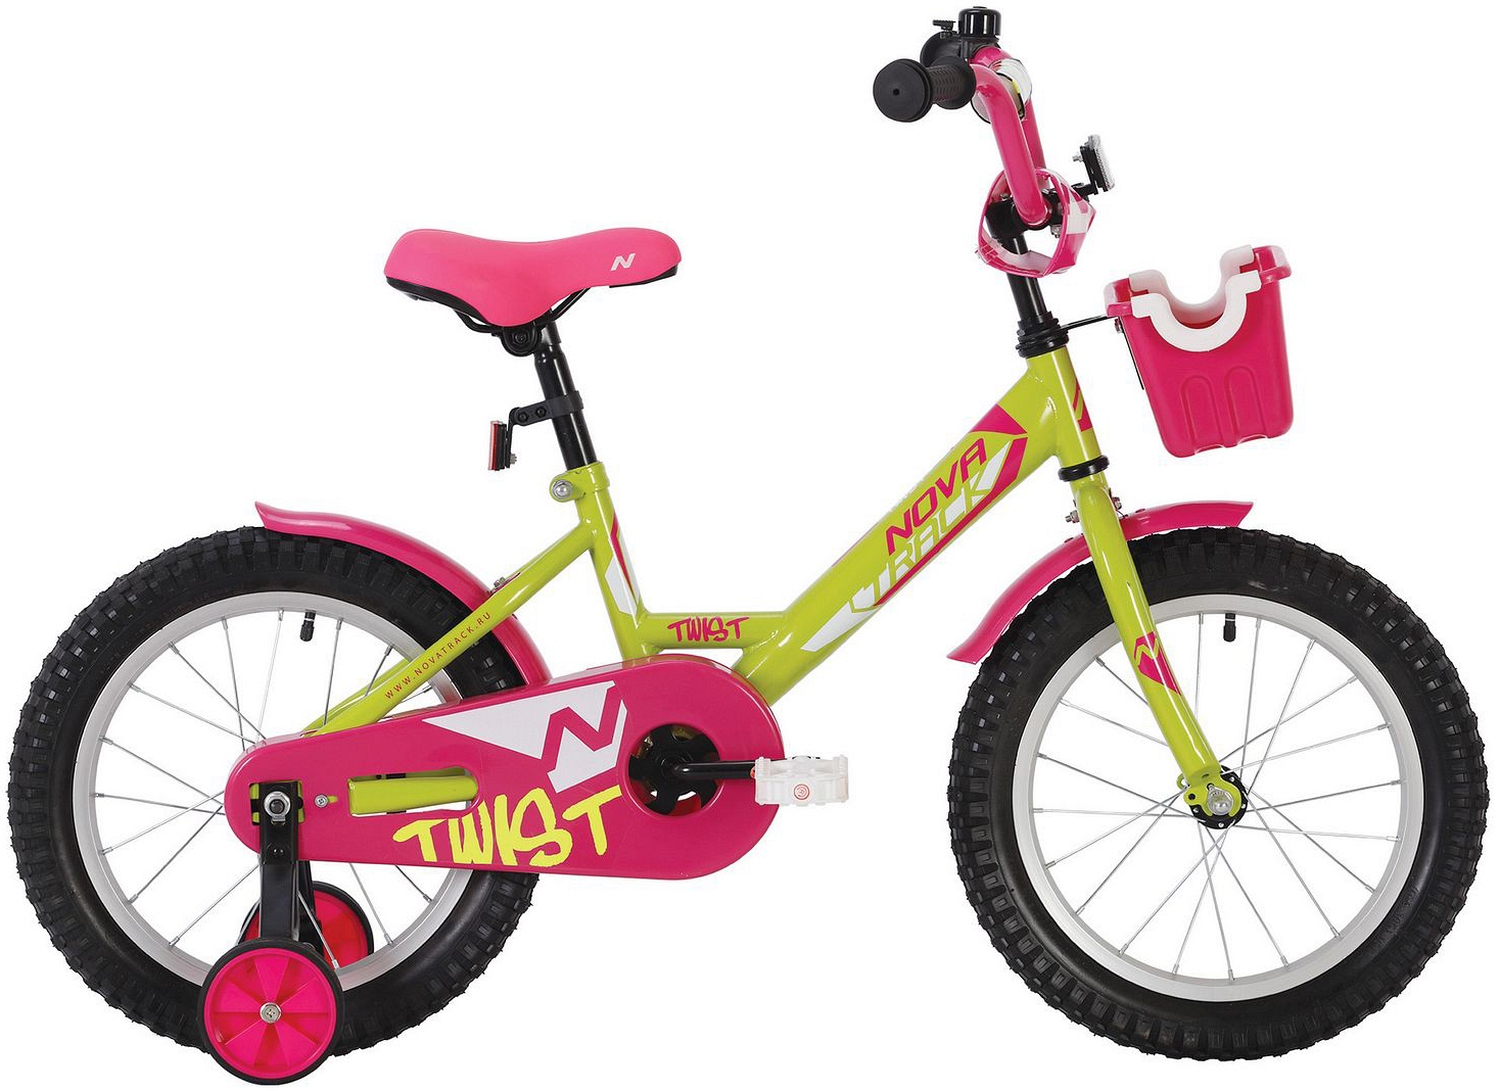  Отзывы о Детском велосипеде Novatrack Twist 12 с корзинкой 2020